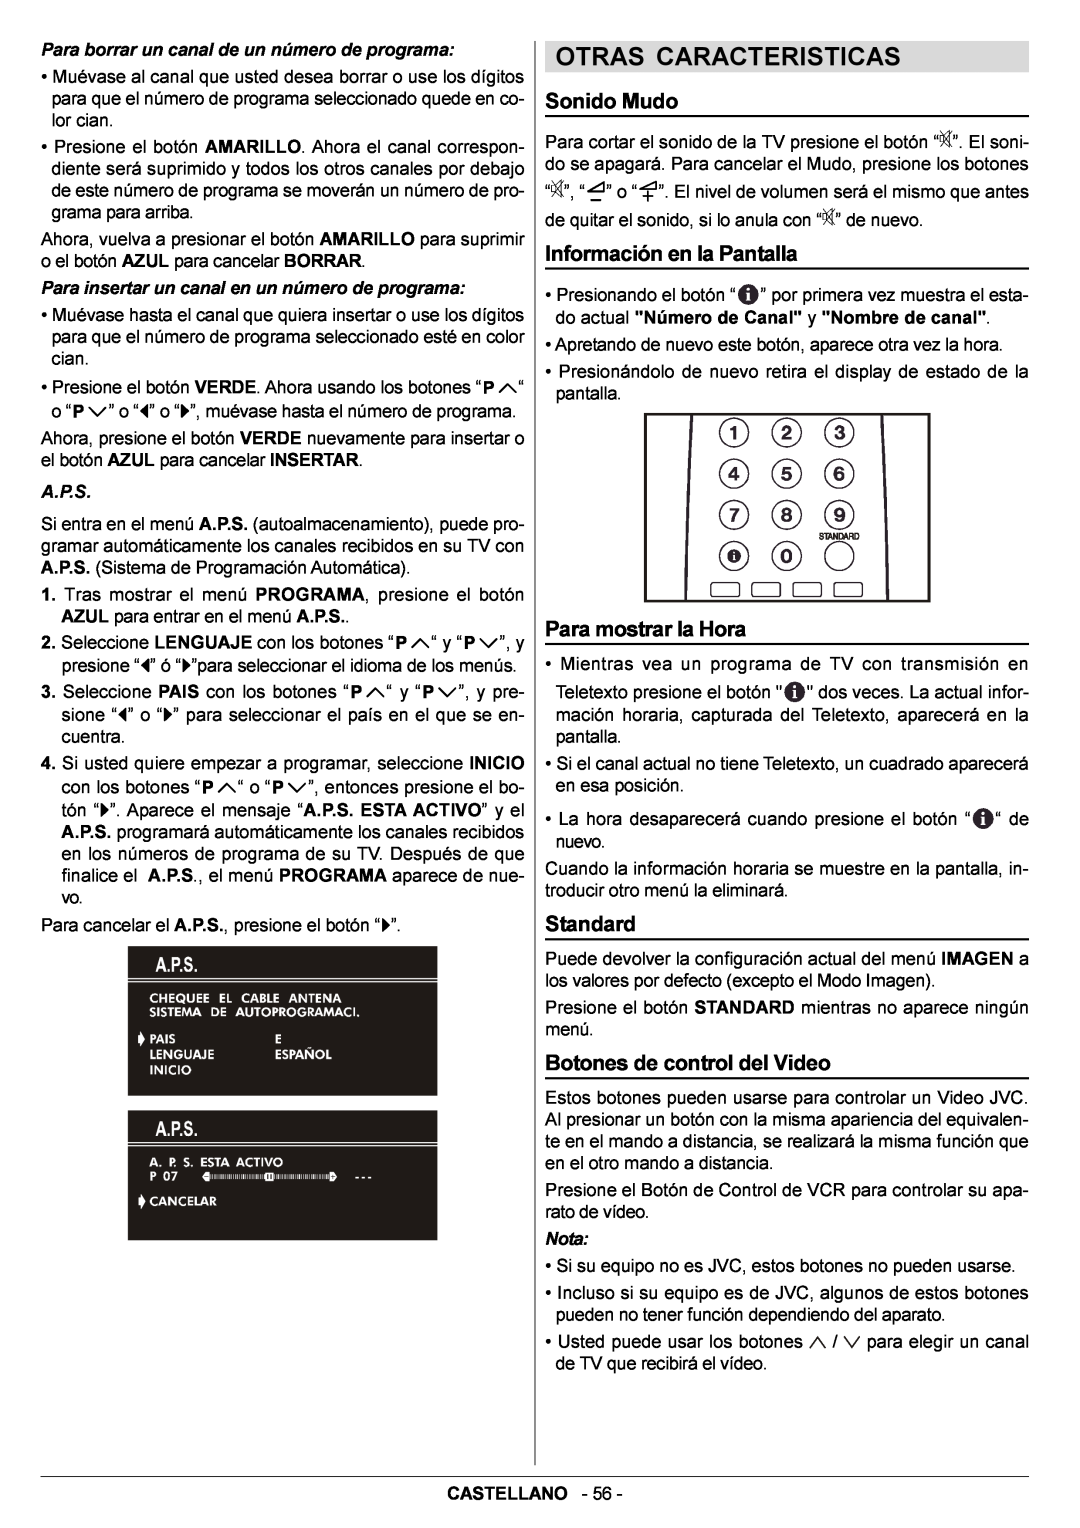 JVC AV14BJ8EPS manual Otras Caracteristicas, Para borrar un canal de un número de programa, A.P.S, Nota 